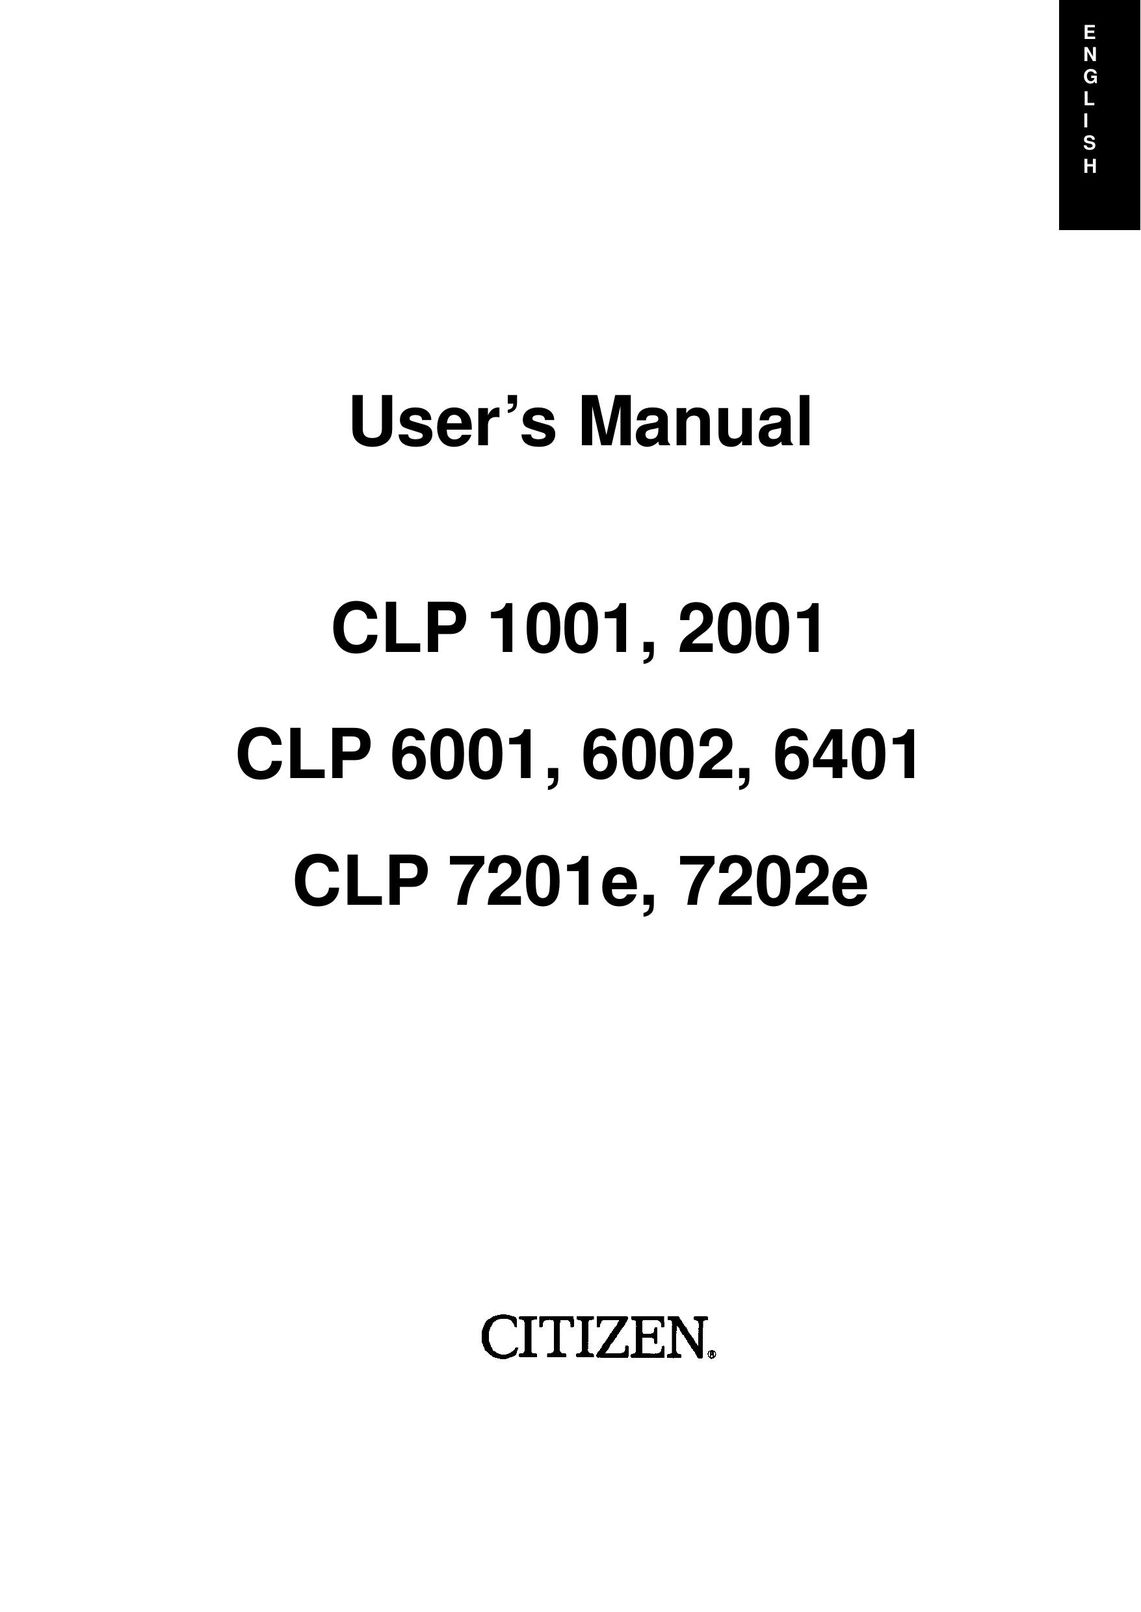 Citizen Systems CLP 7202e Printer User Manual